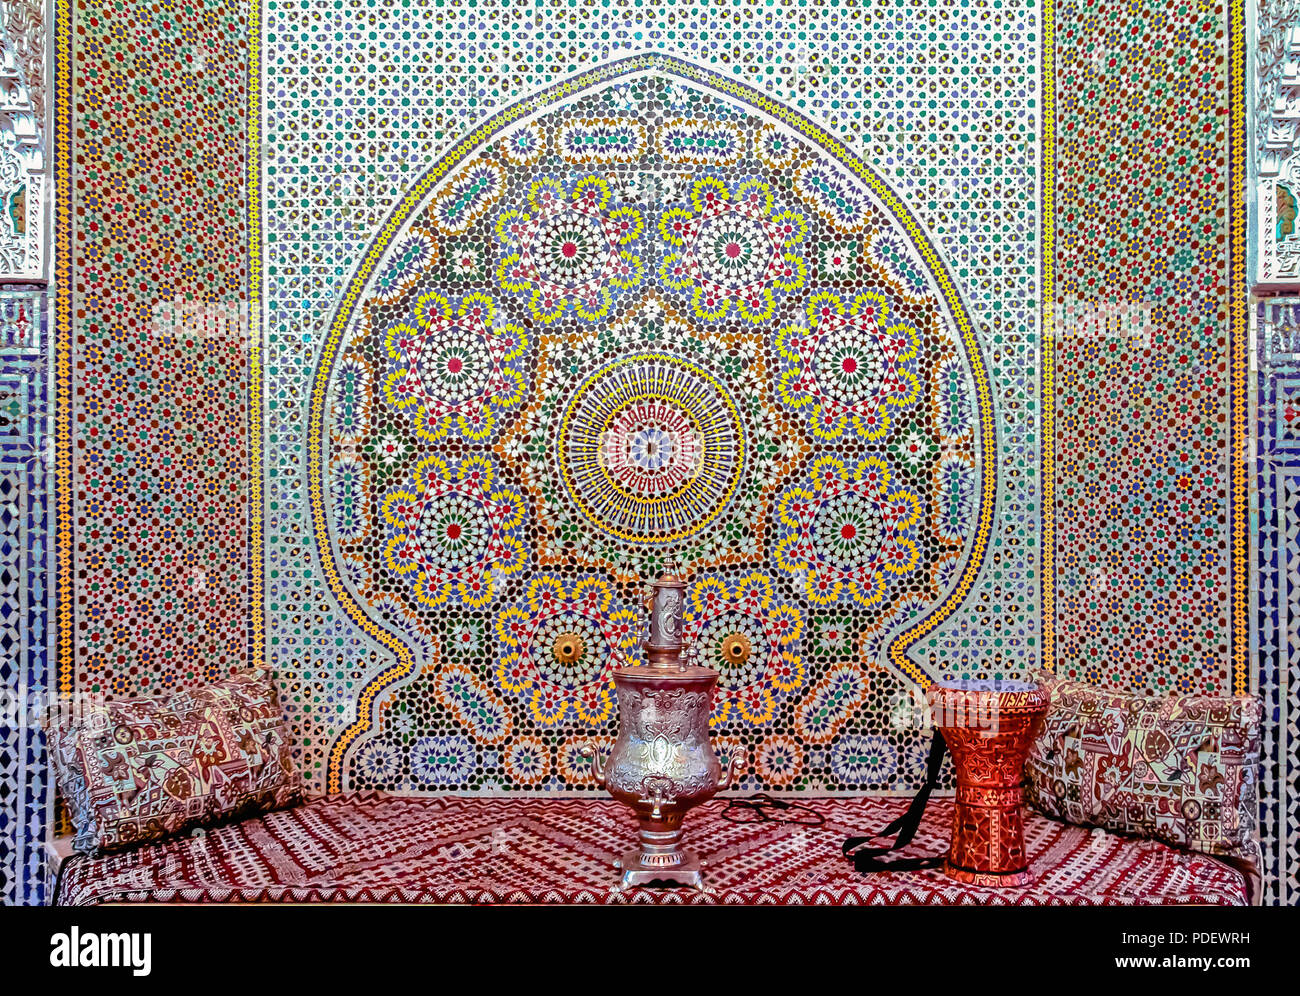 Fes, Maroc - 11 mai 2013 : cour intérieure décorée avec des mosaïques, avec des divans, un samovar et un tambour dans un riad marocain Banque D'Images